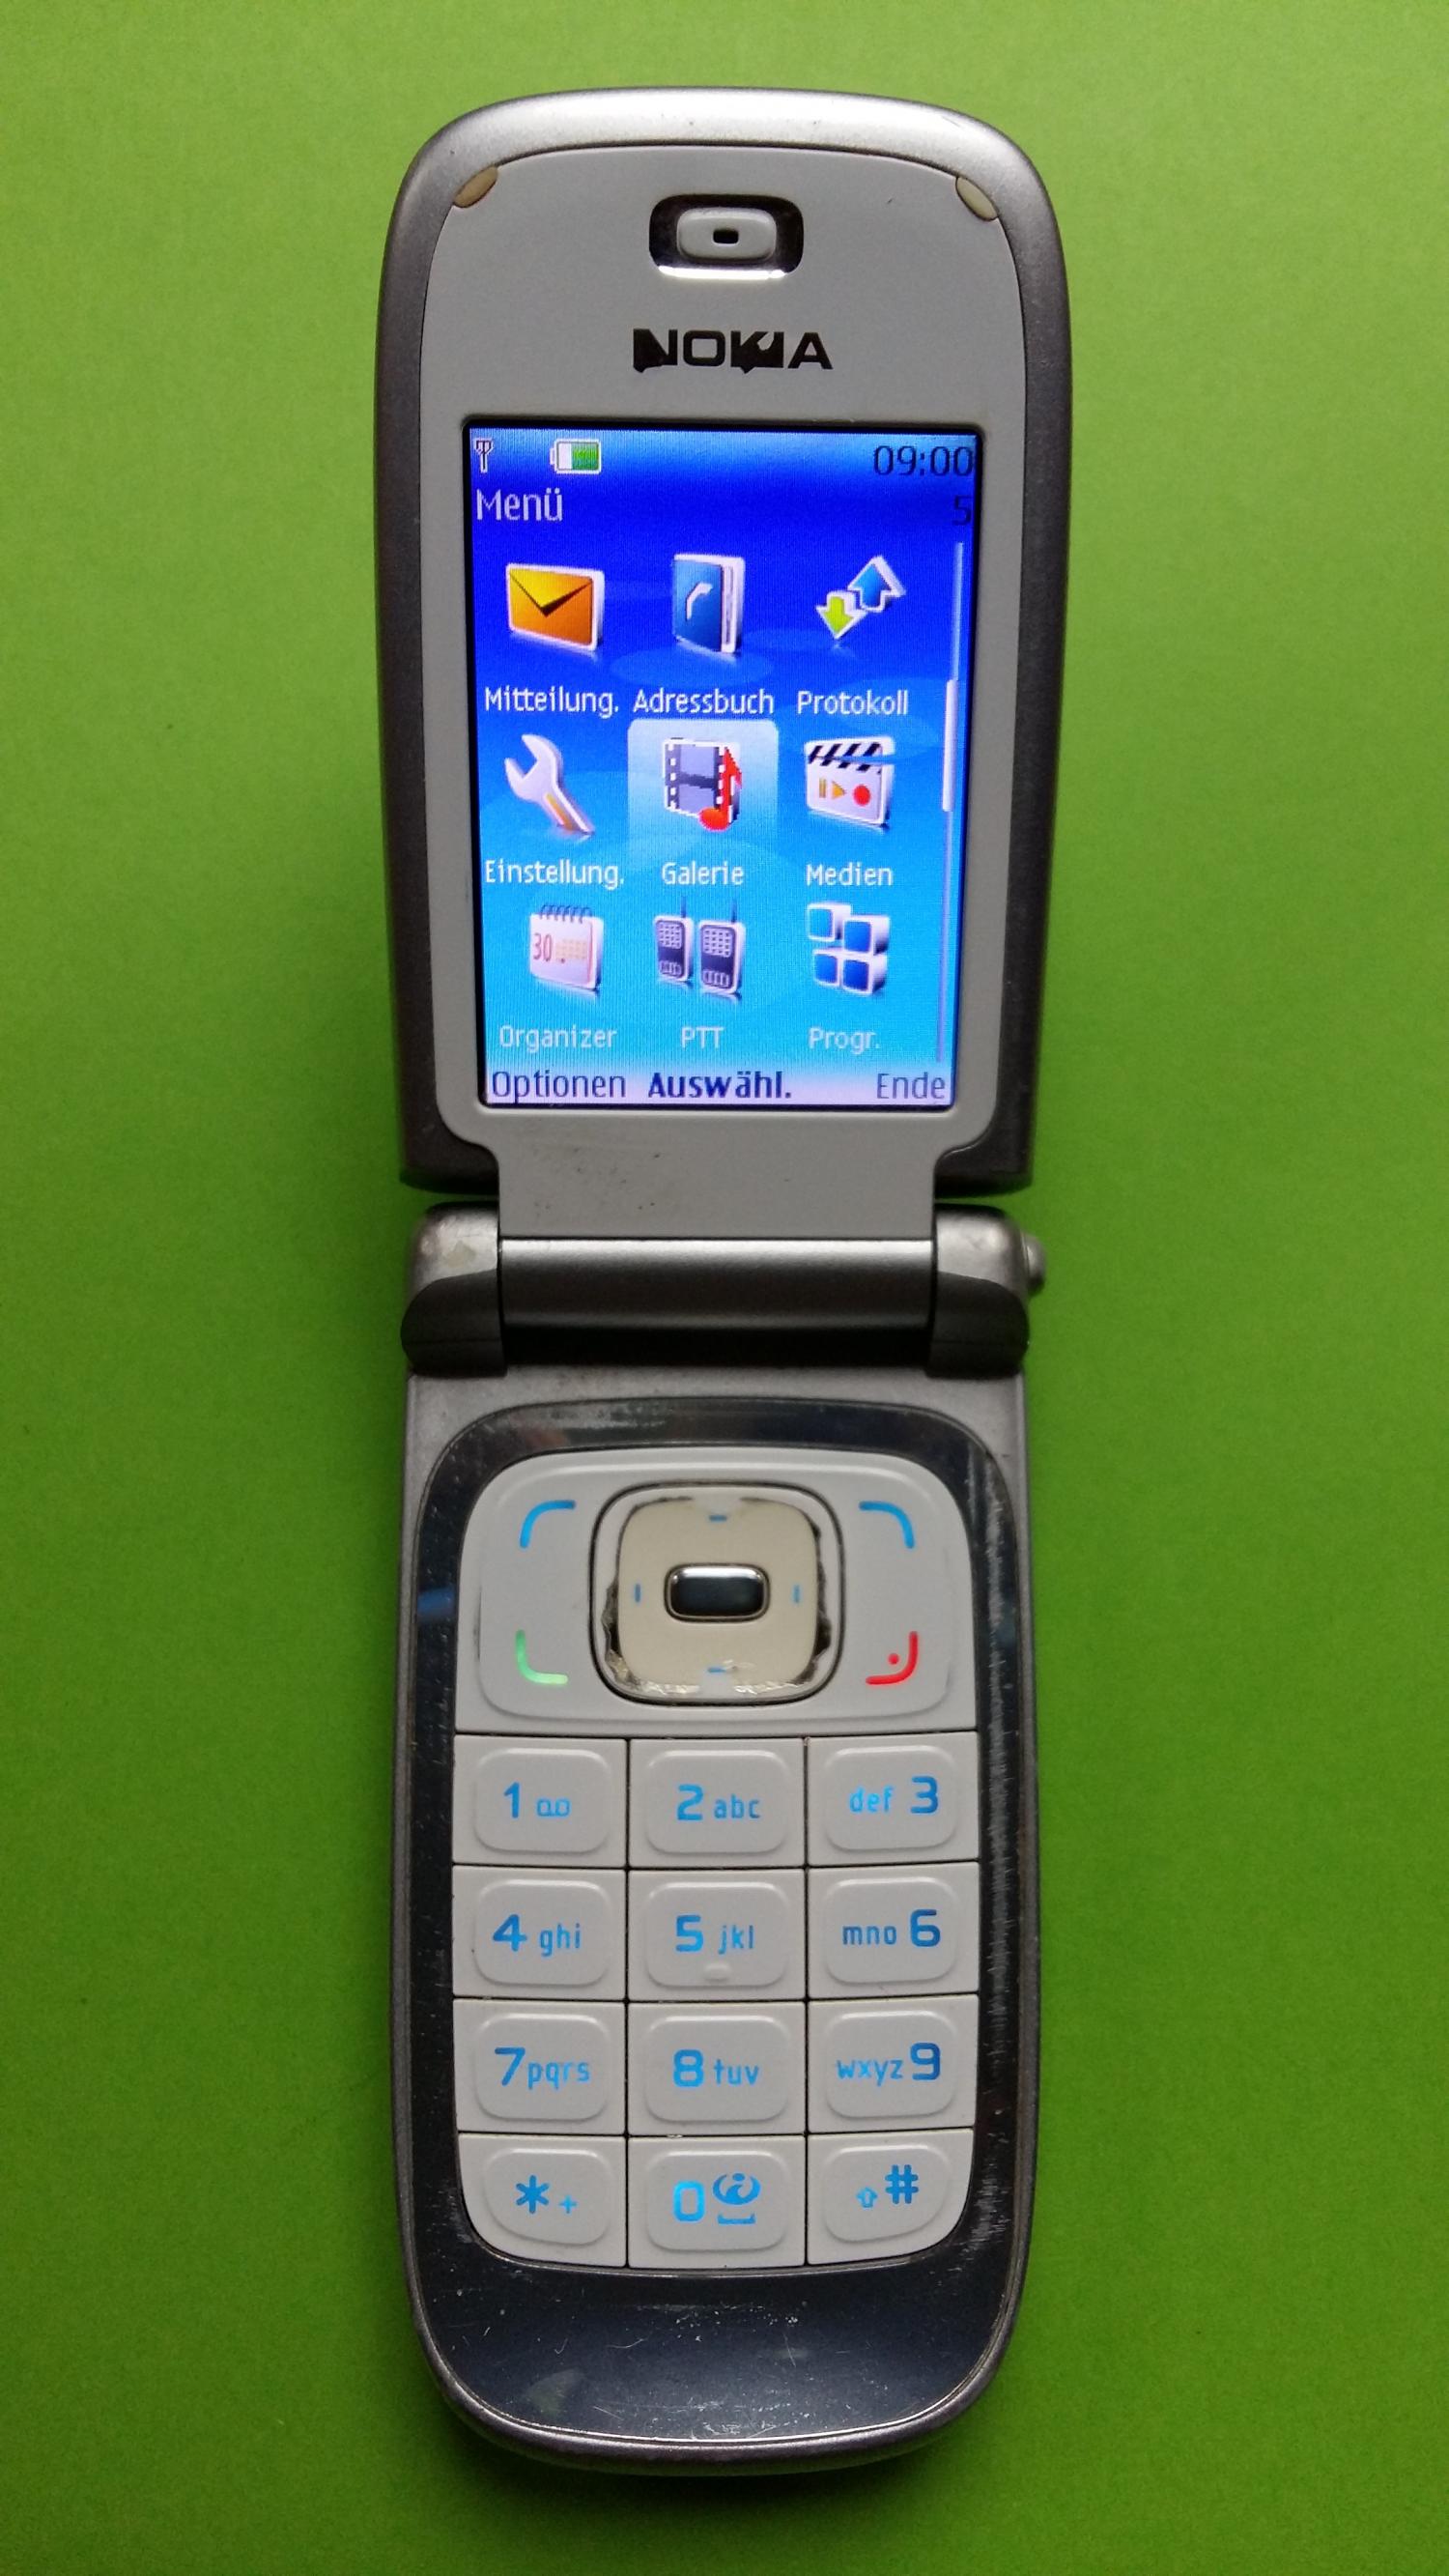 image-7305202-Nokia 6131 (3)2.jpg